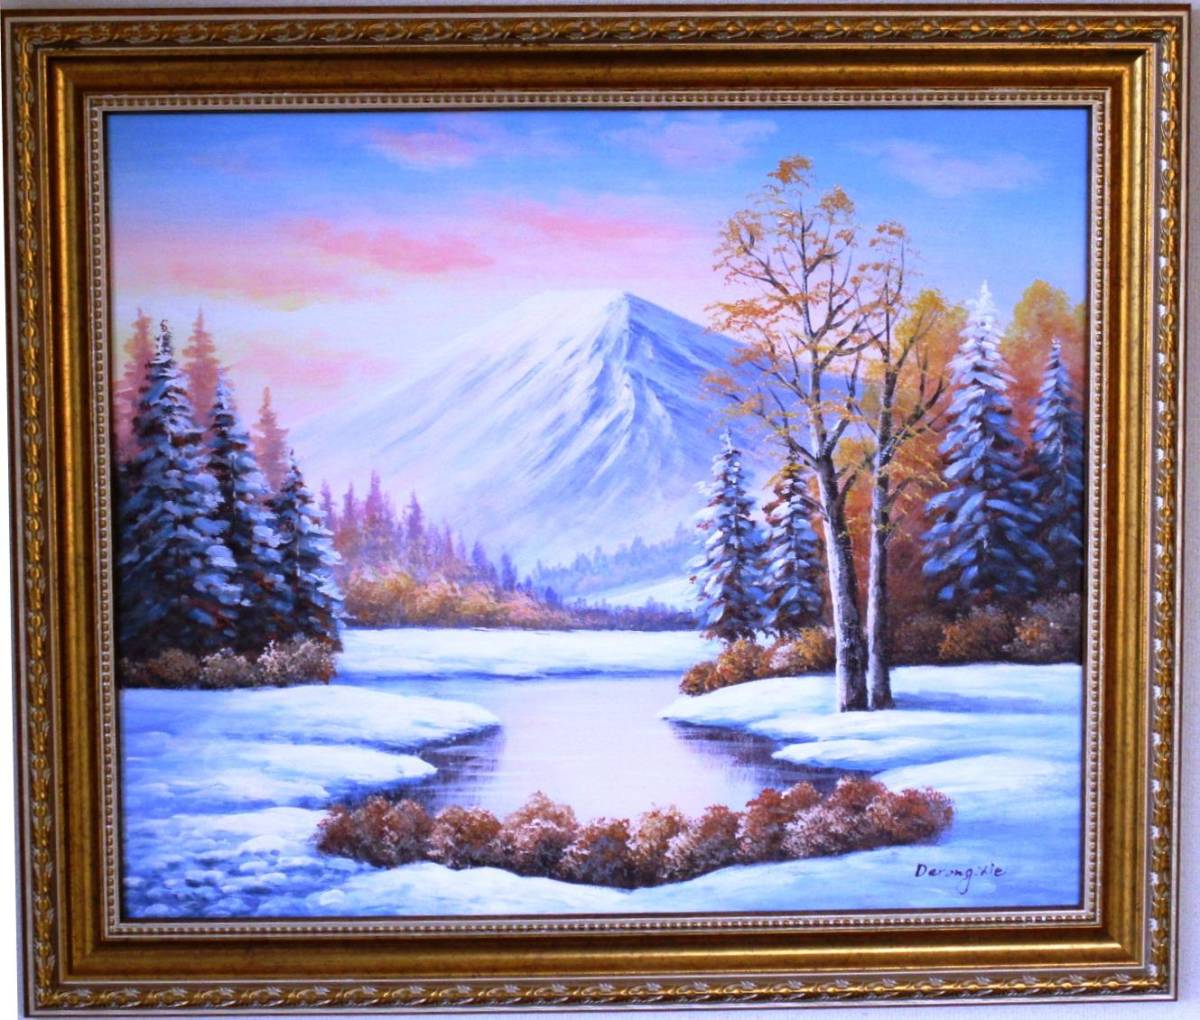 Peinture du Mont Fuji Peinture à l'huile Peinture de paysage Mont Fuji depuis le pied nord du mont Fuji n° 12 3-1 Veuillez l'accrocher dans votre salon., Peinture, Peinture à l'huile, Nature, Peinture de paysage